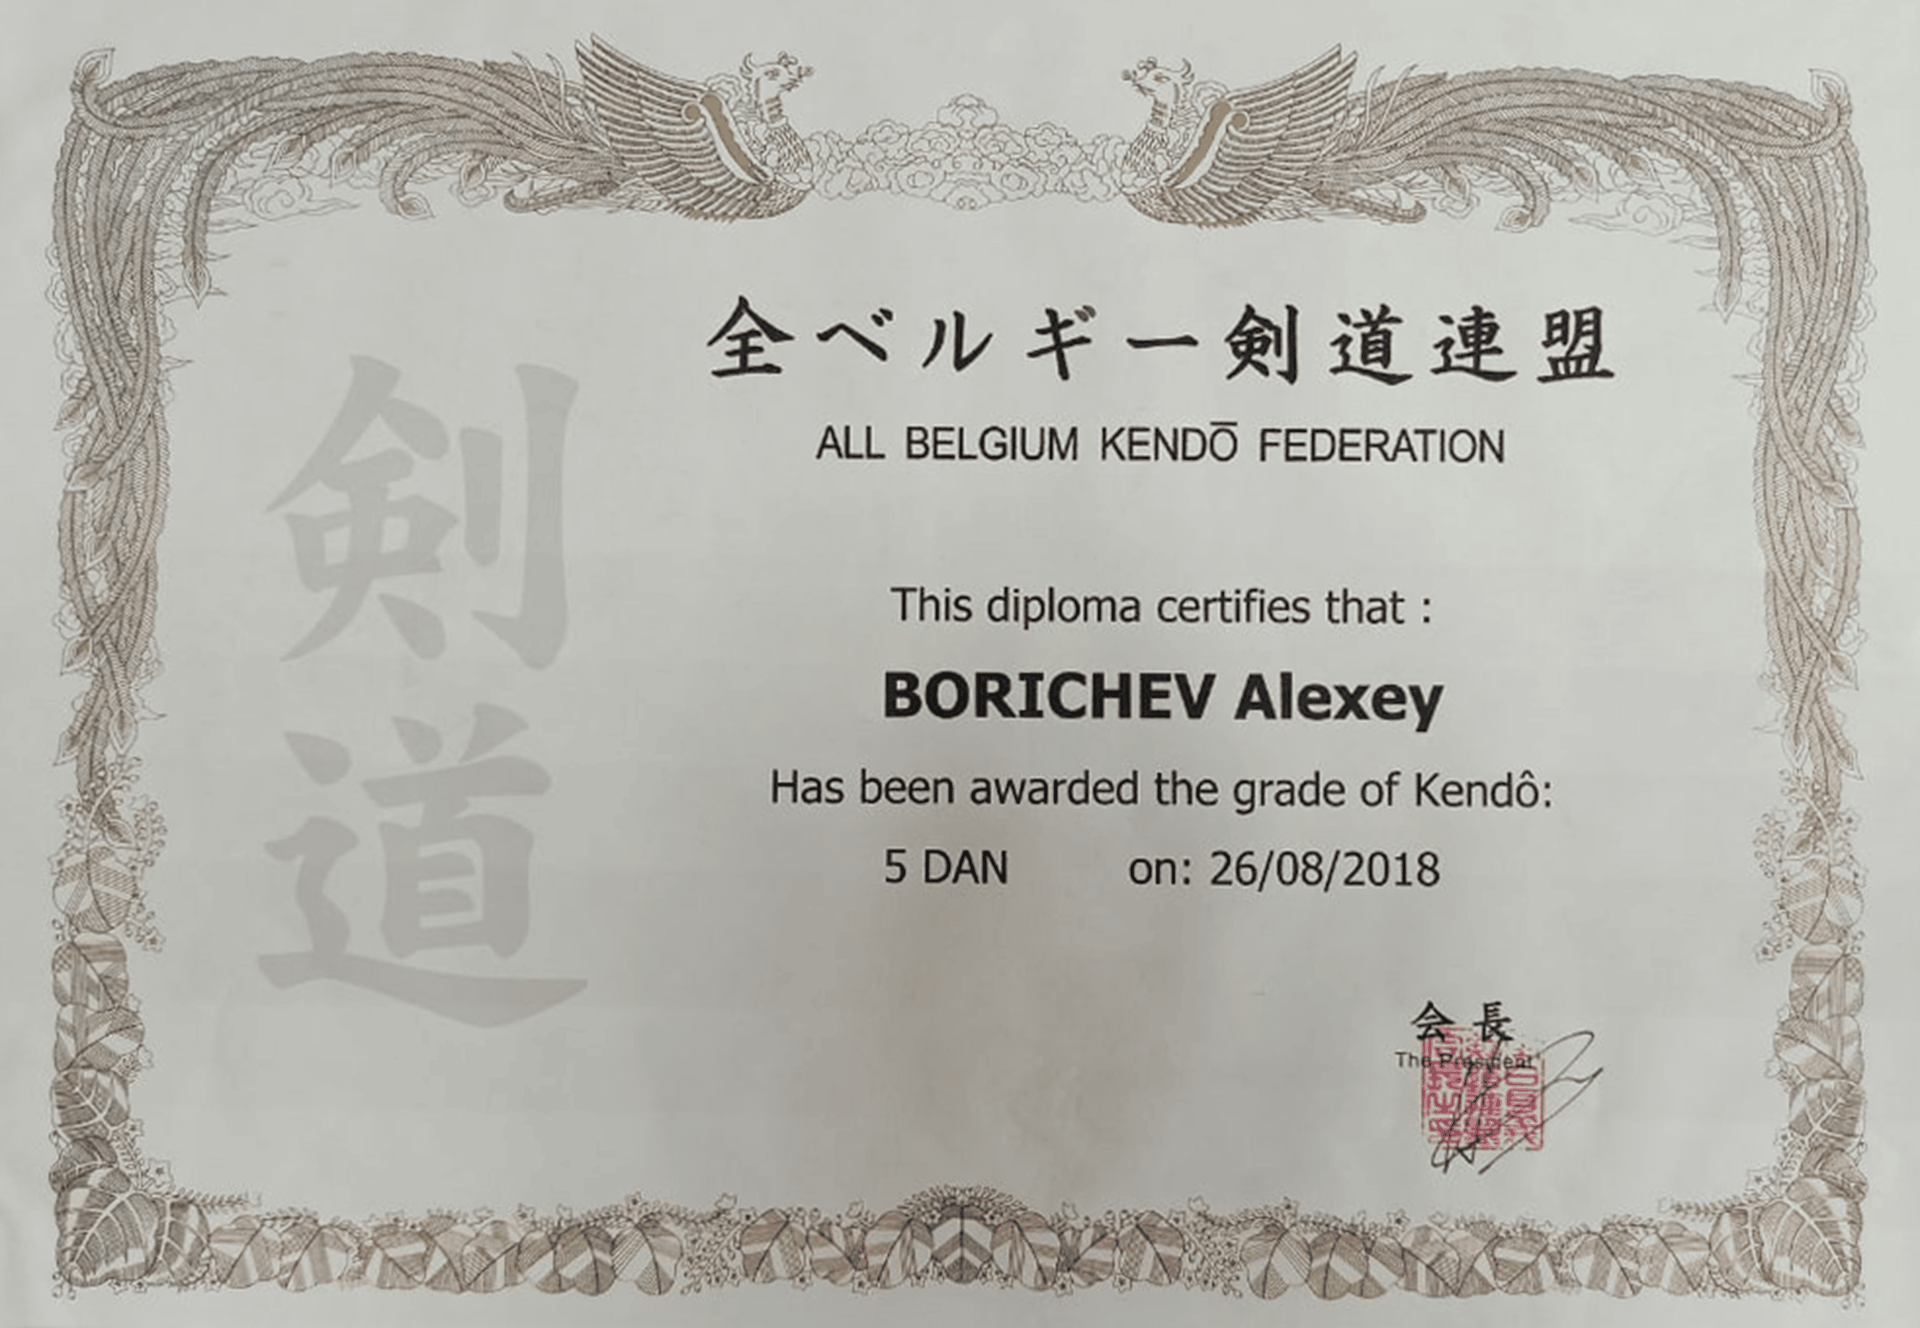 Сертификат тренера